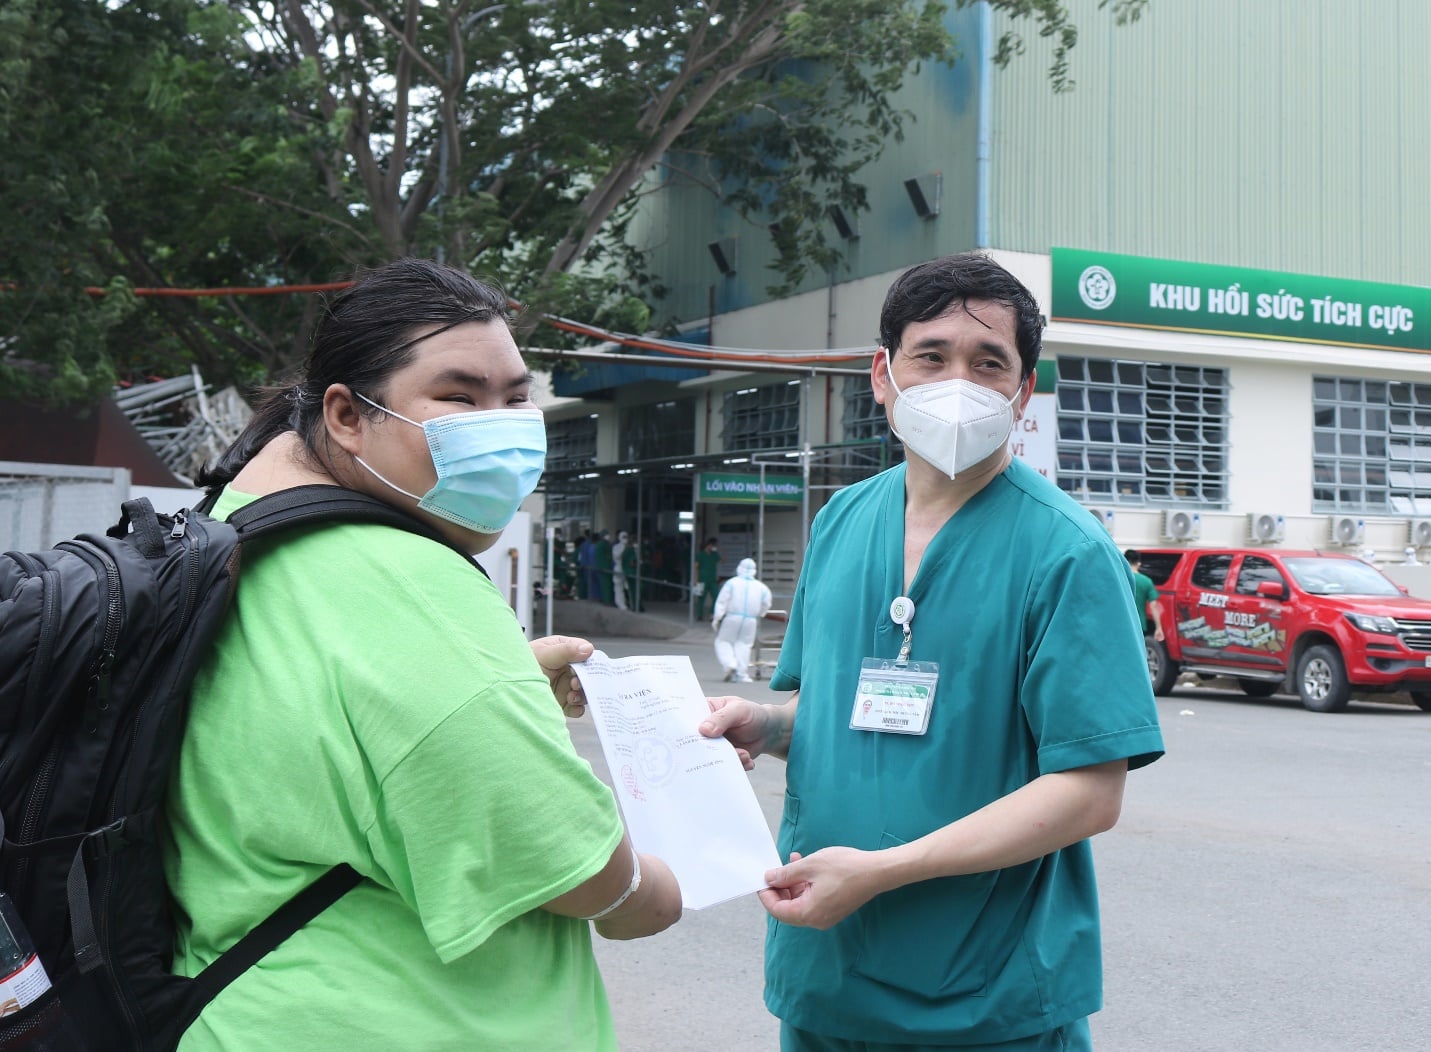 TS. BS Đỗ Ngọc Sơn - Phó giám đốc Trung tâm Cấp cứu A9, Phó giám đốc Trung tâm HSTC người bệnh COVID-19, BV Bạch Mai trao giấy ra viện cho bệnh nhân P.